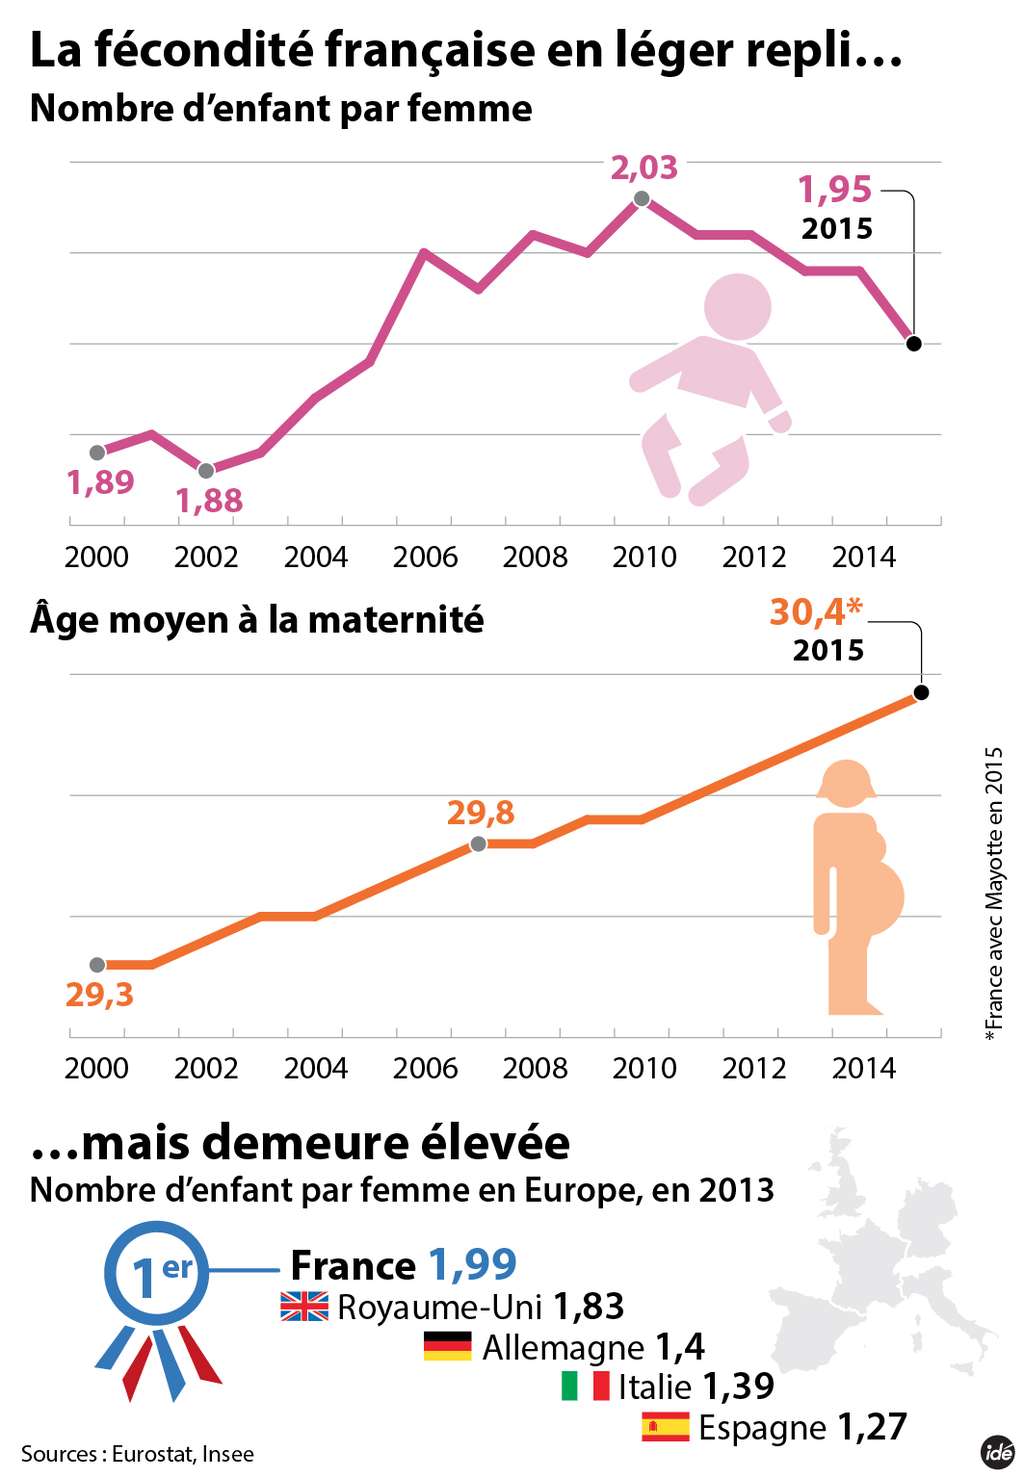 La fécondité des femmes françaises a baissé en 2015 mais reste élevée par rapport aux autres pays européens. © idé